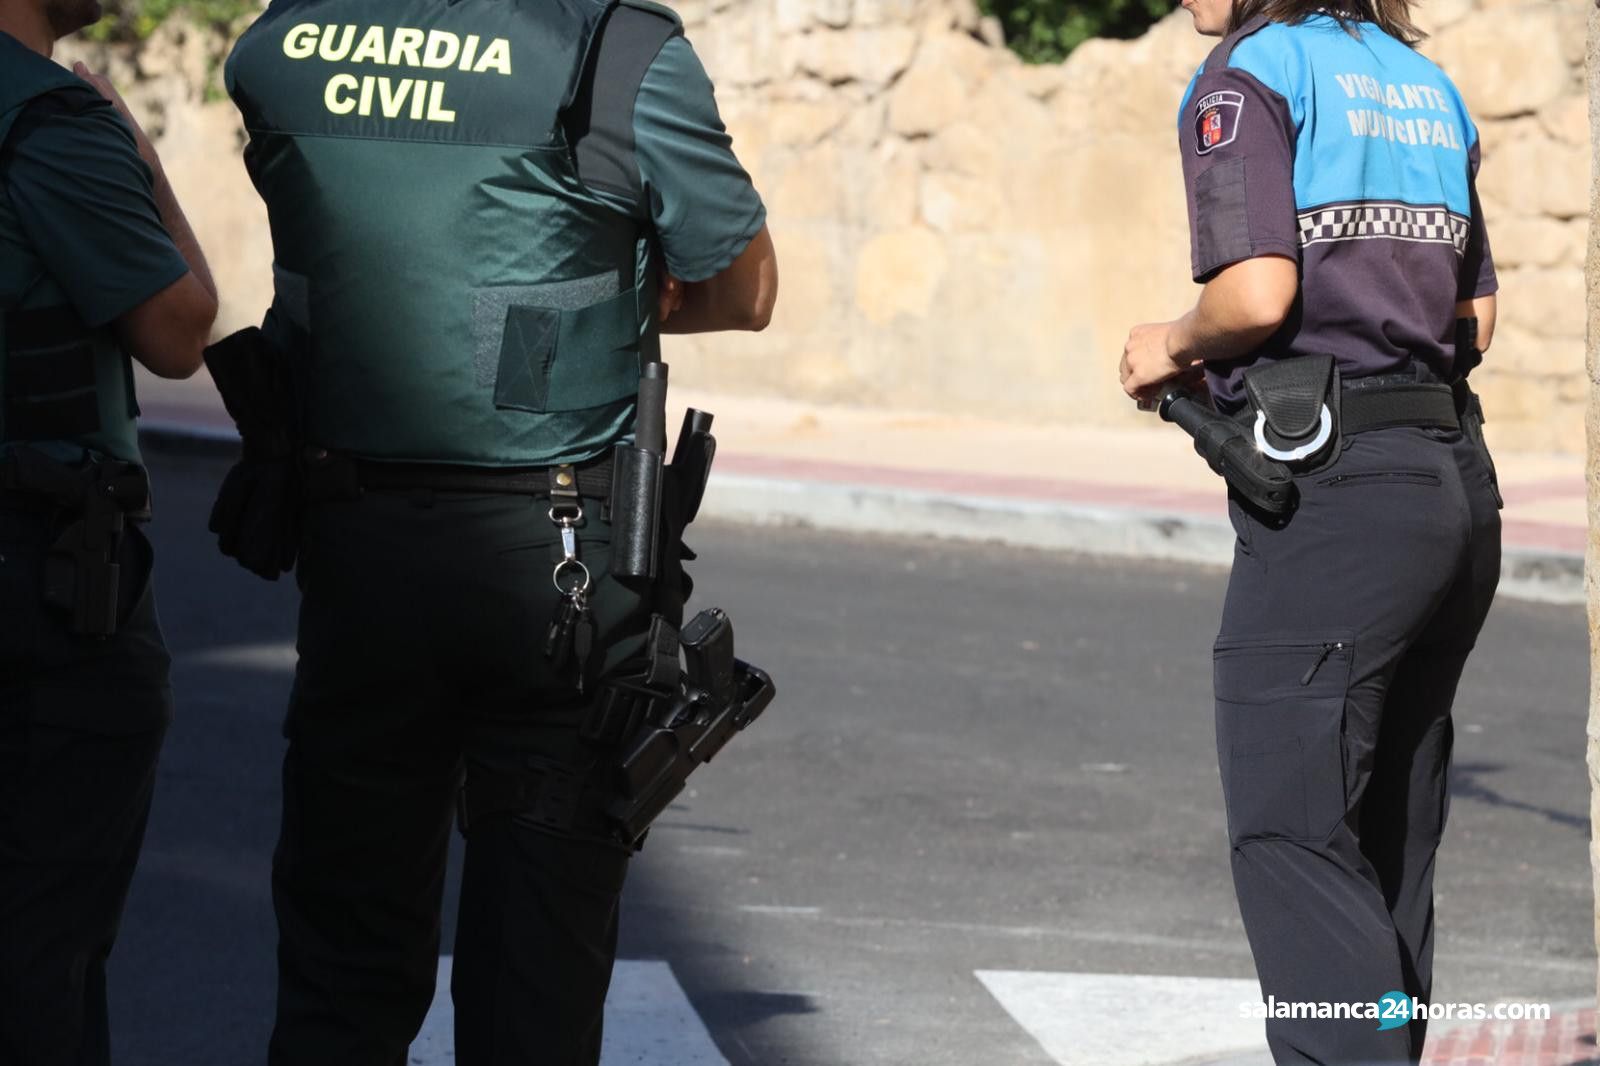  Guardia Civil en Villamayor 2 